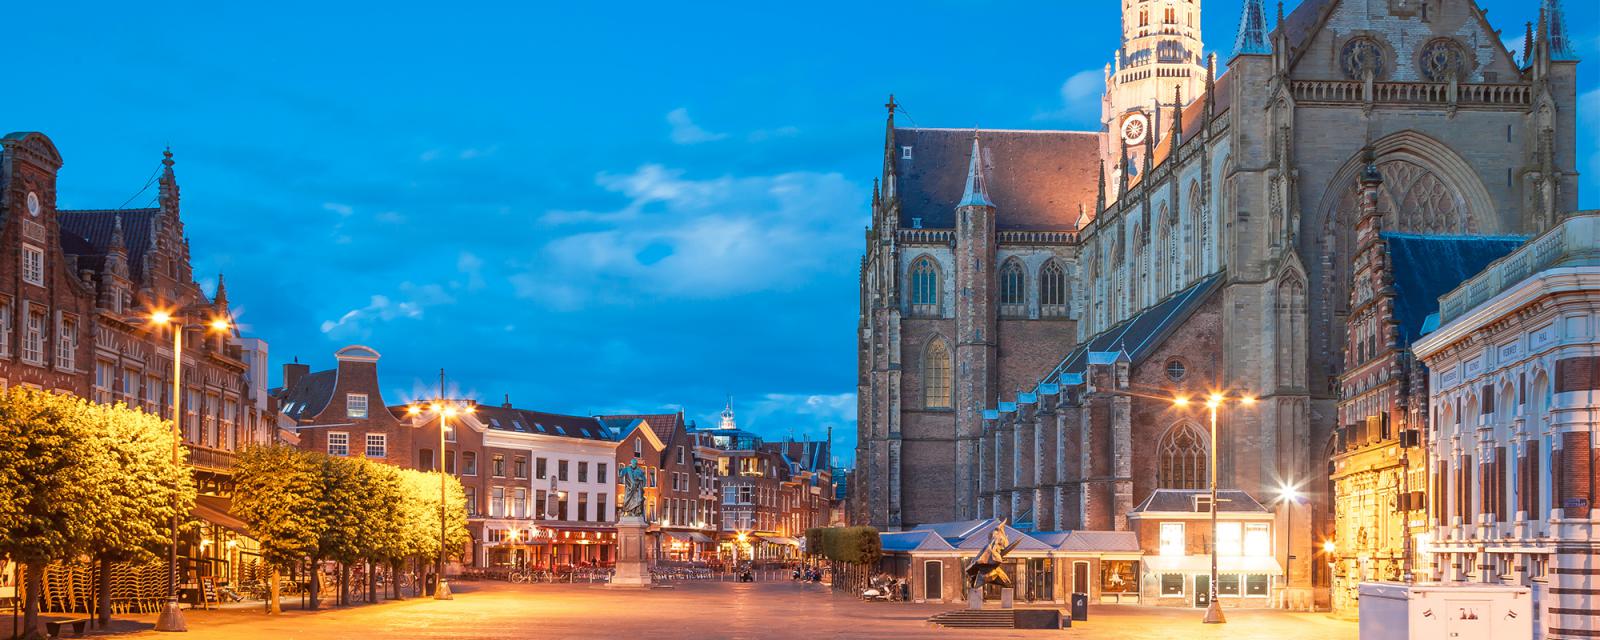 De mooiste fotoplekken voor je stedentrip naar Haarlem 